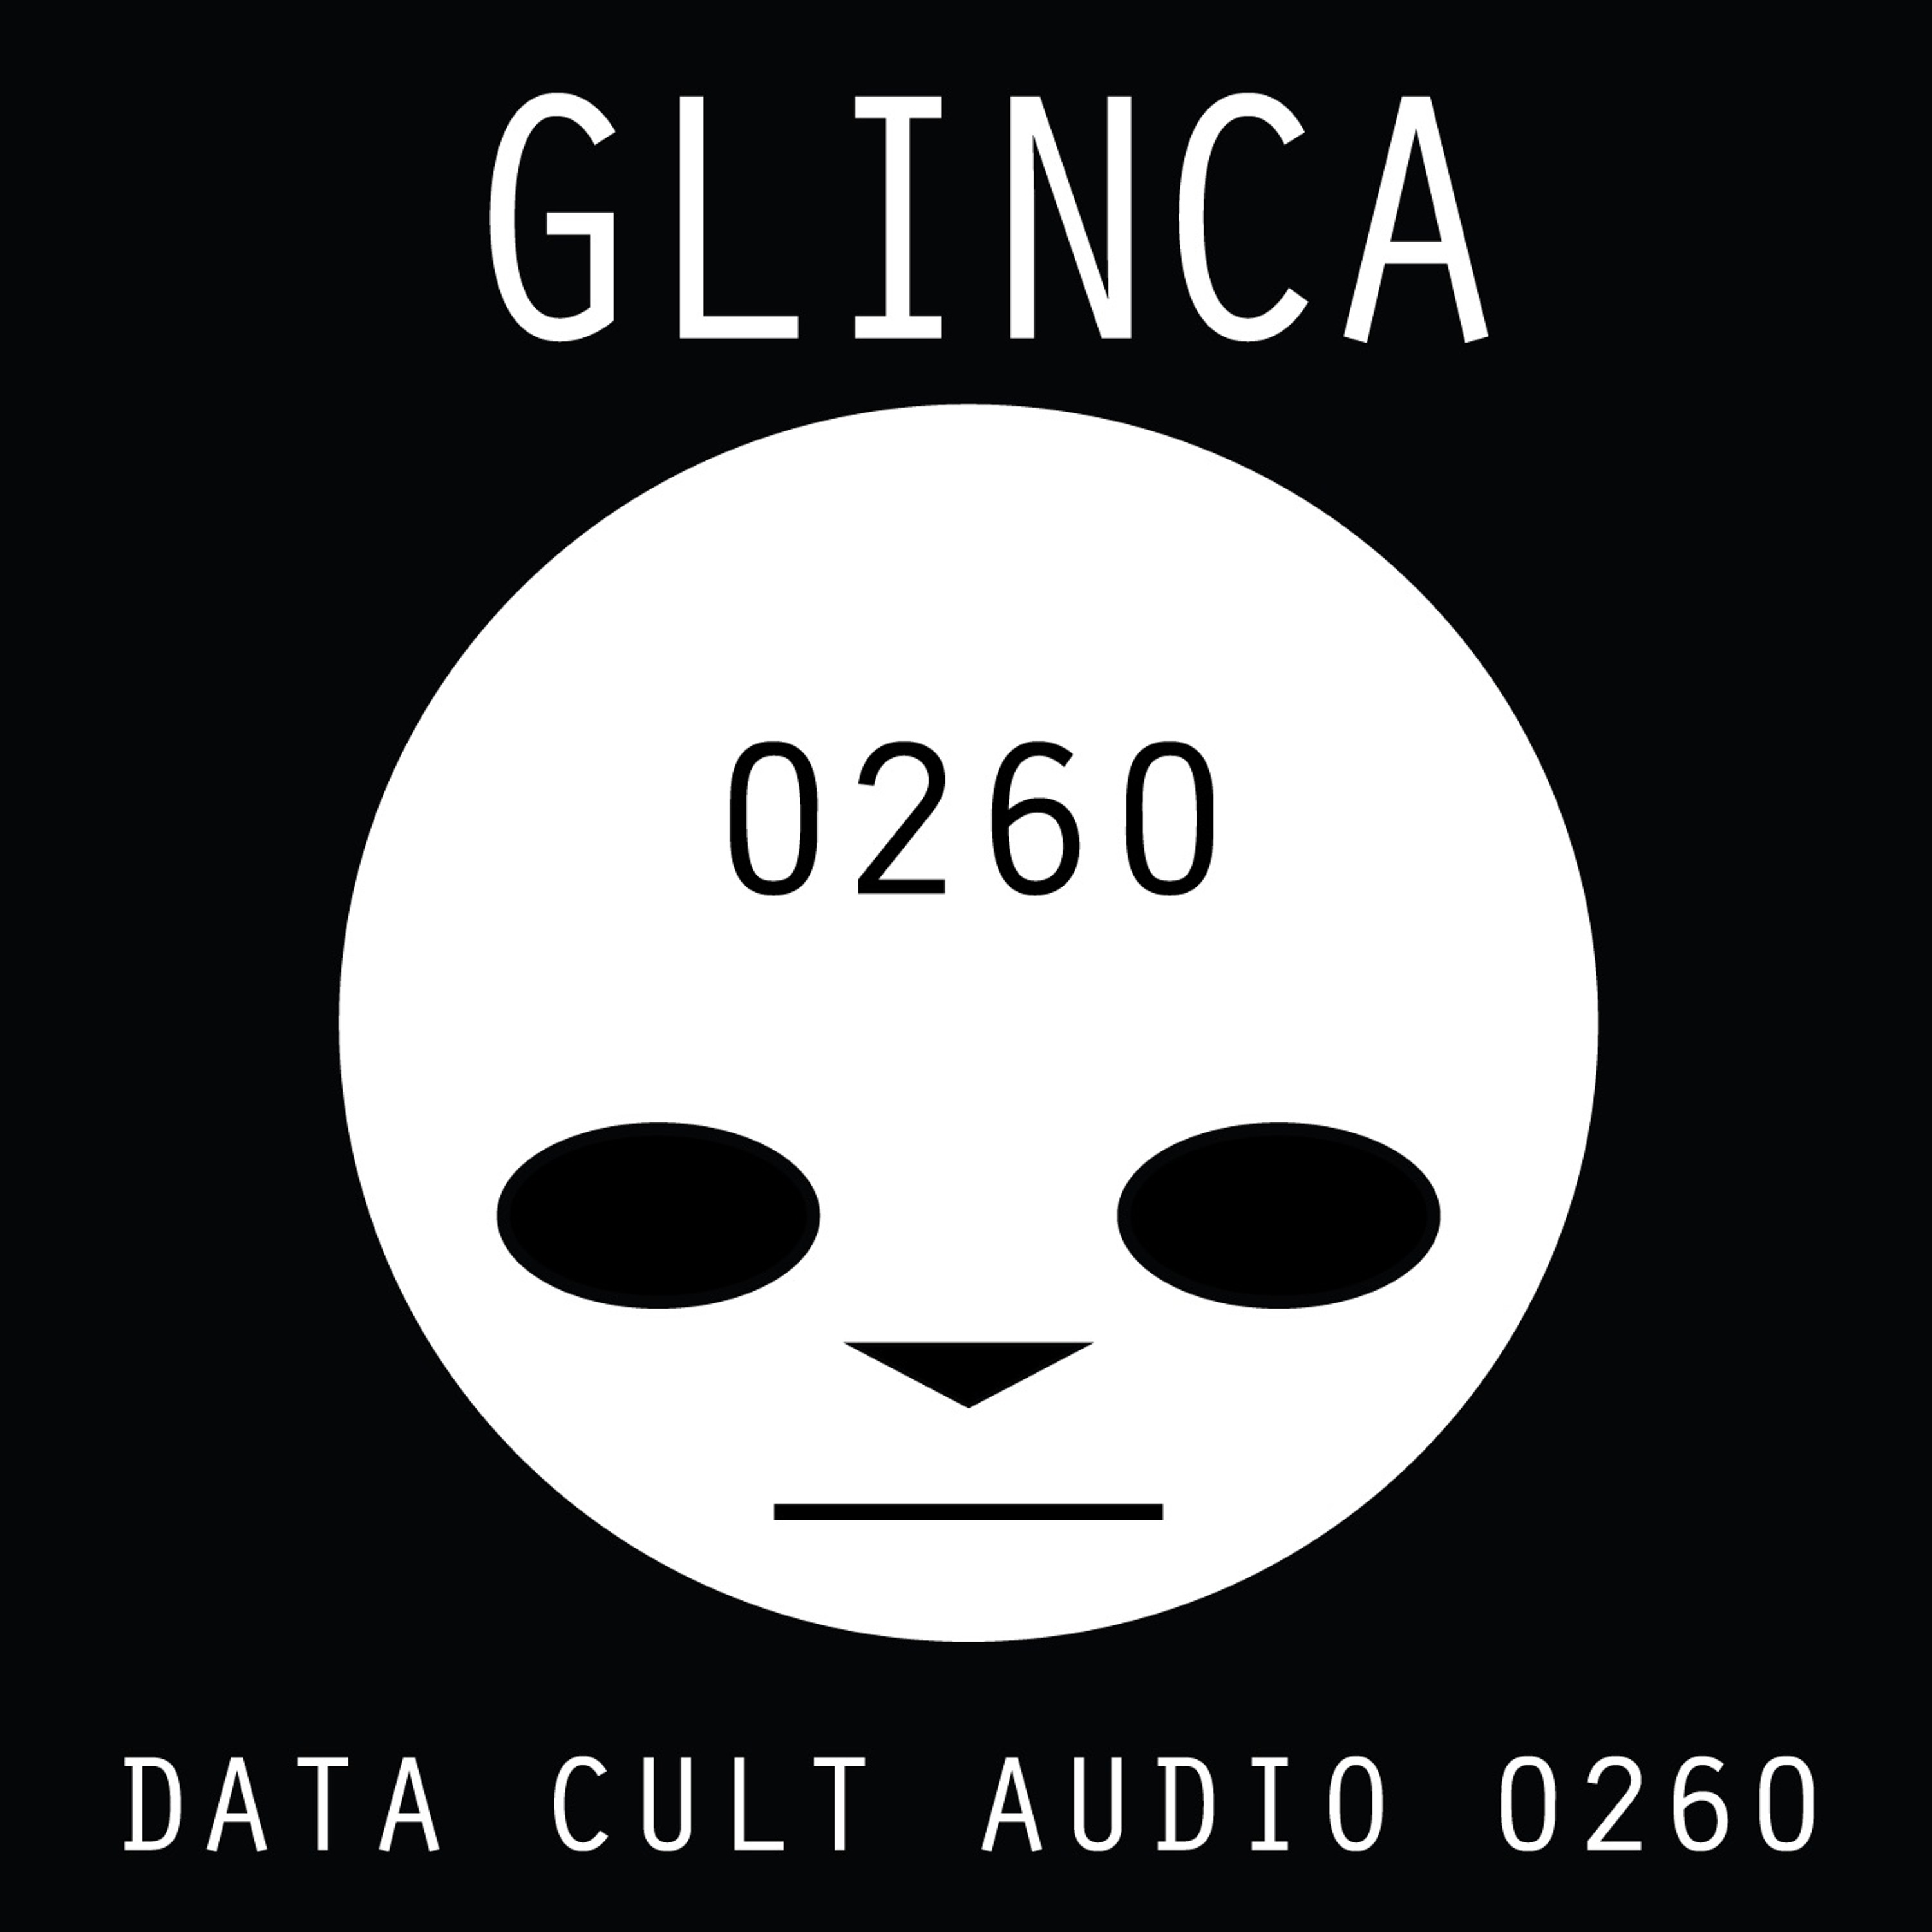 Data Cult Audio 0260 - Glinca